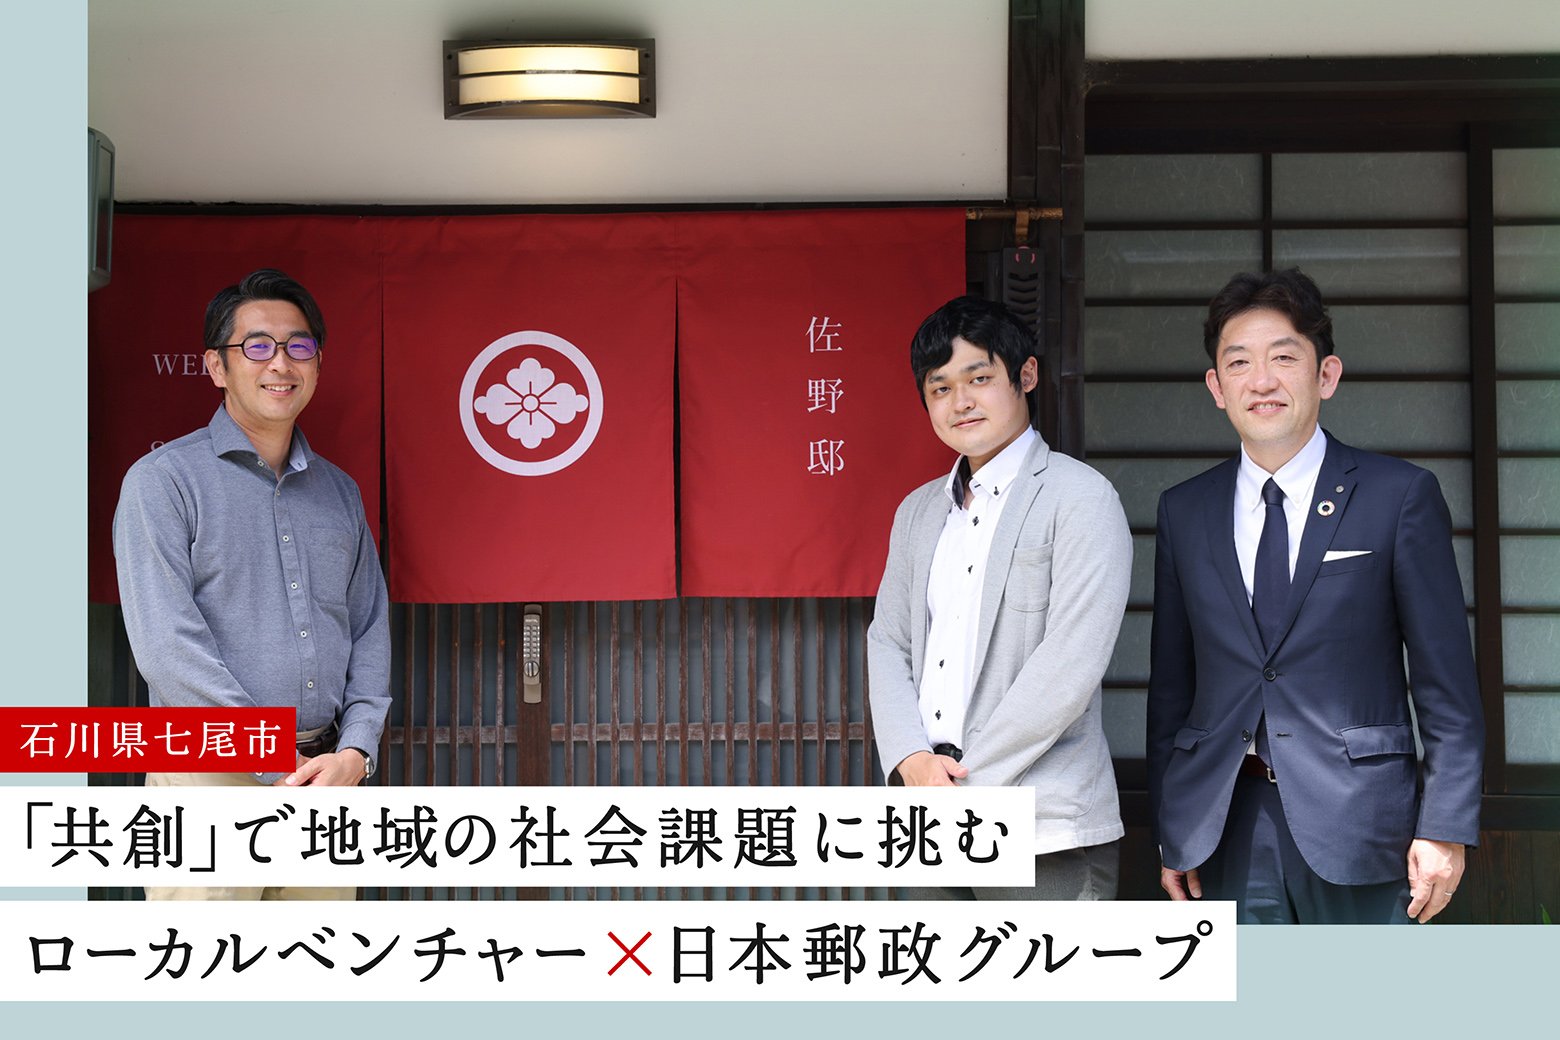 ローカル共創のススメVol.2 石川県七尾市で郵便局ネットワークを活かして事業承継をサポート！